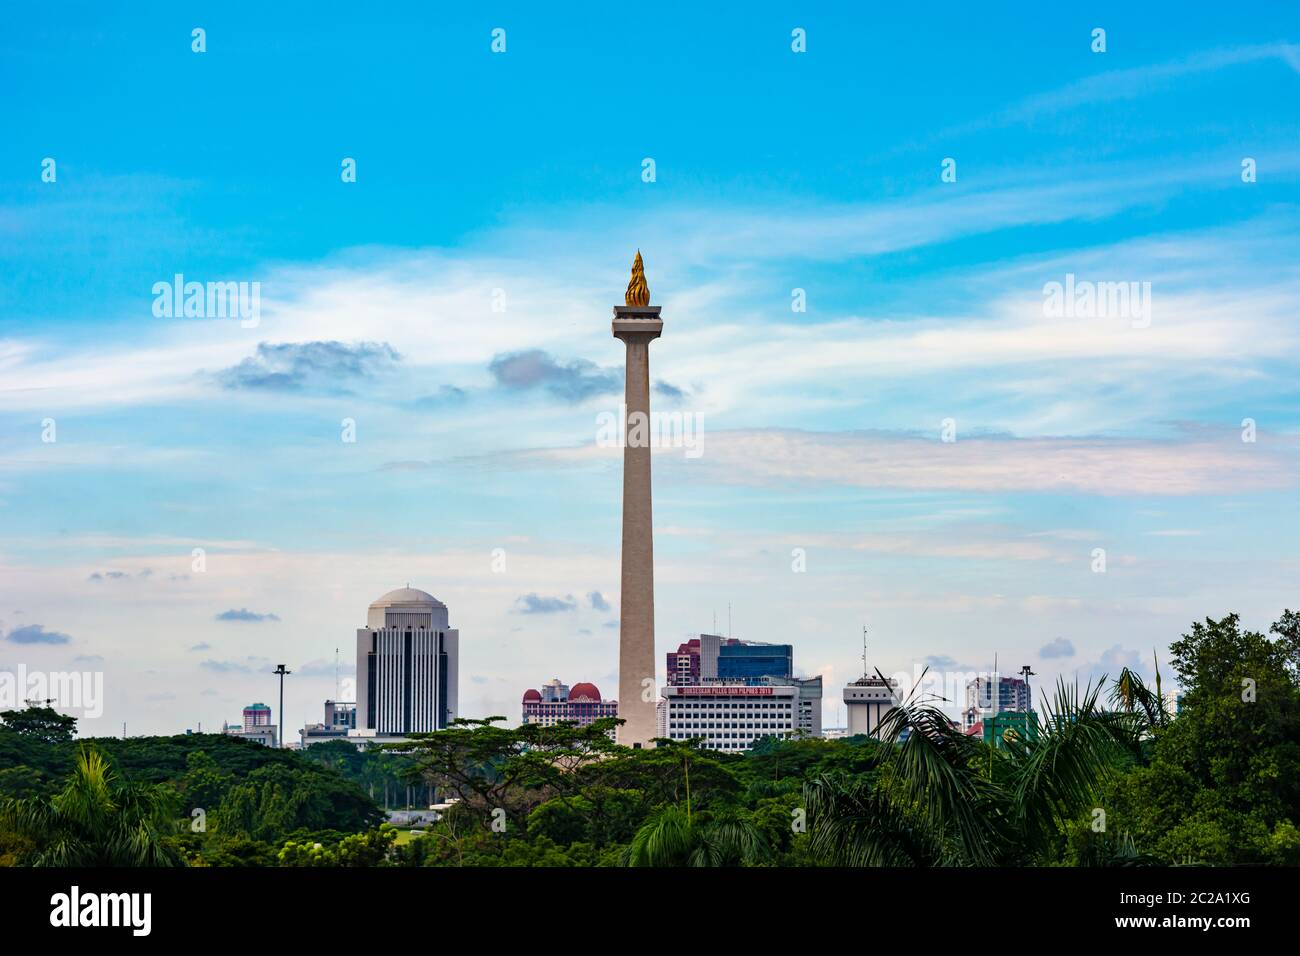 Jakarta, Indonesien - 19. Februar 2019: Froschansicht der Tugu Monas (Monumen Nasional) oder des Nationaldenkmals in Jakarta, Indonesien. Stockfoto